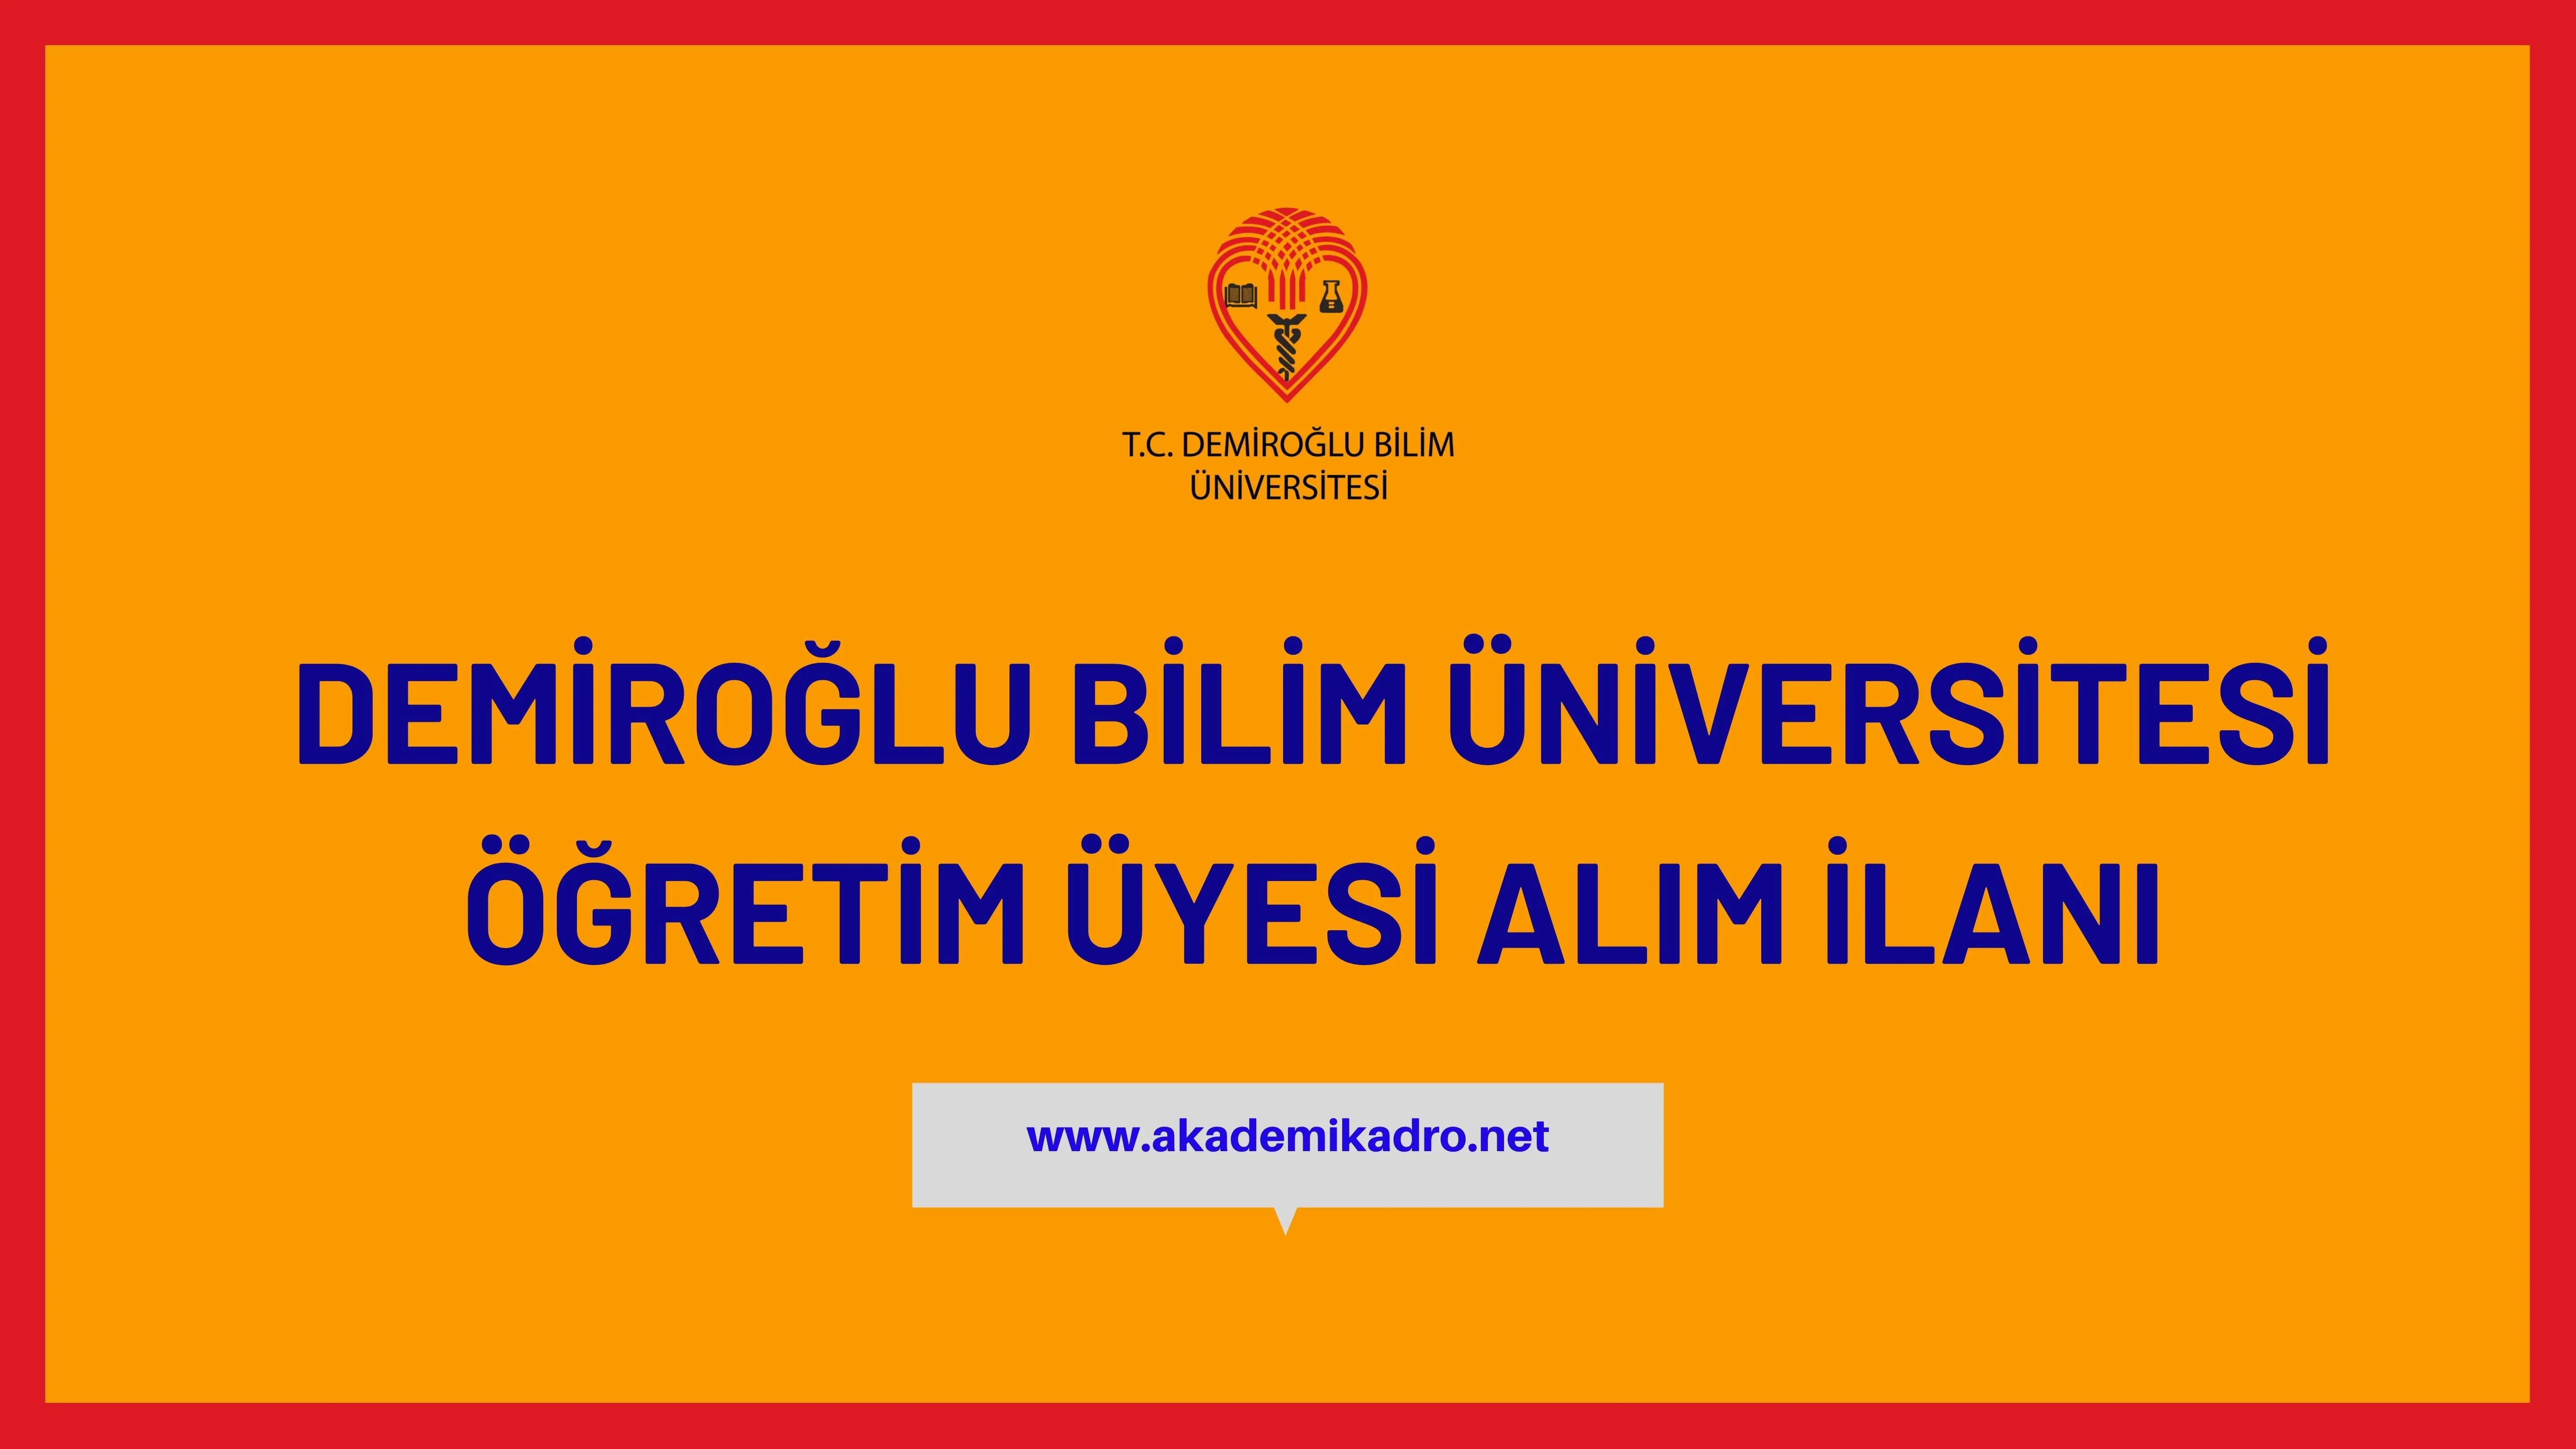 Demiroğlu Bilim Üniversitesi 2  Öğretim üyesi alacak.